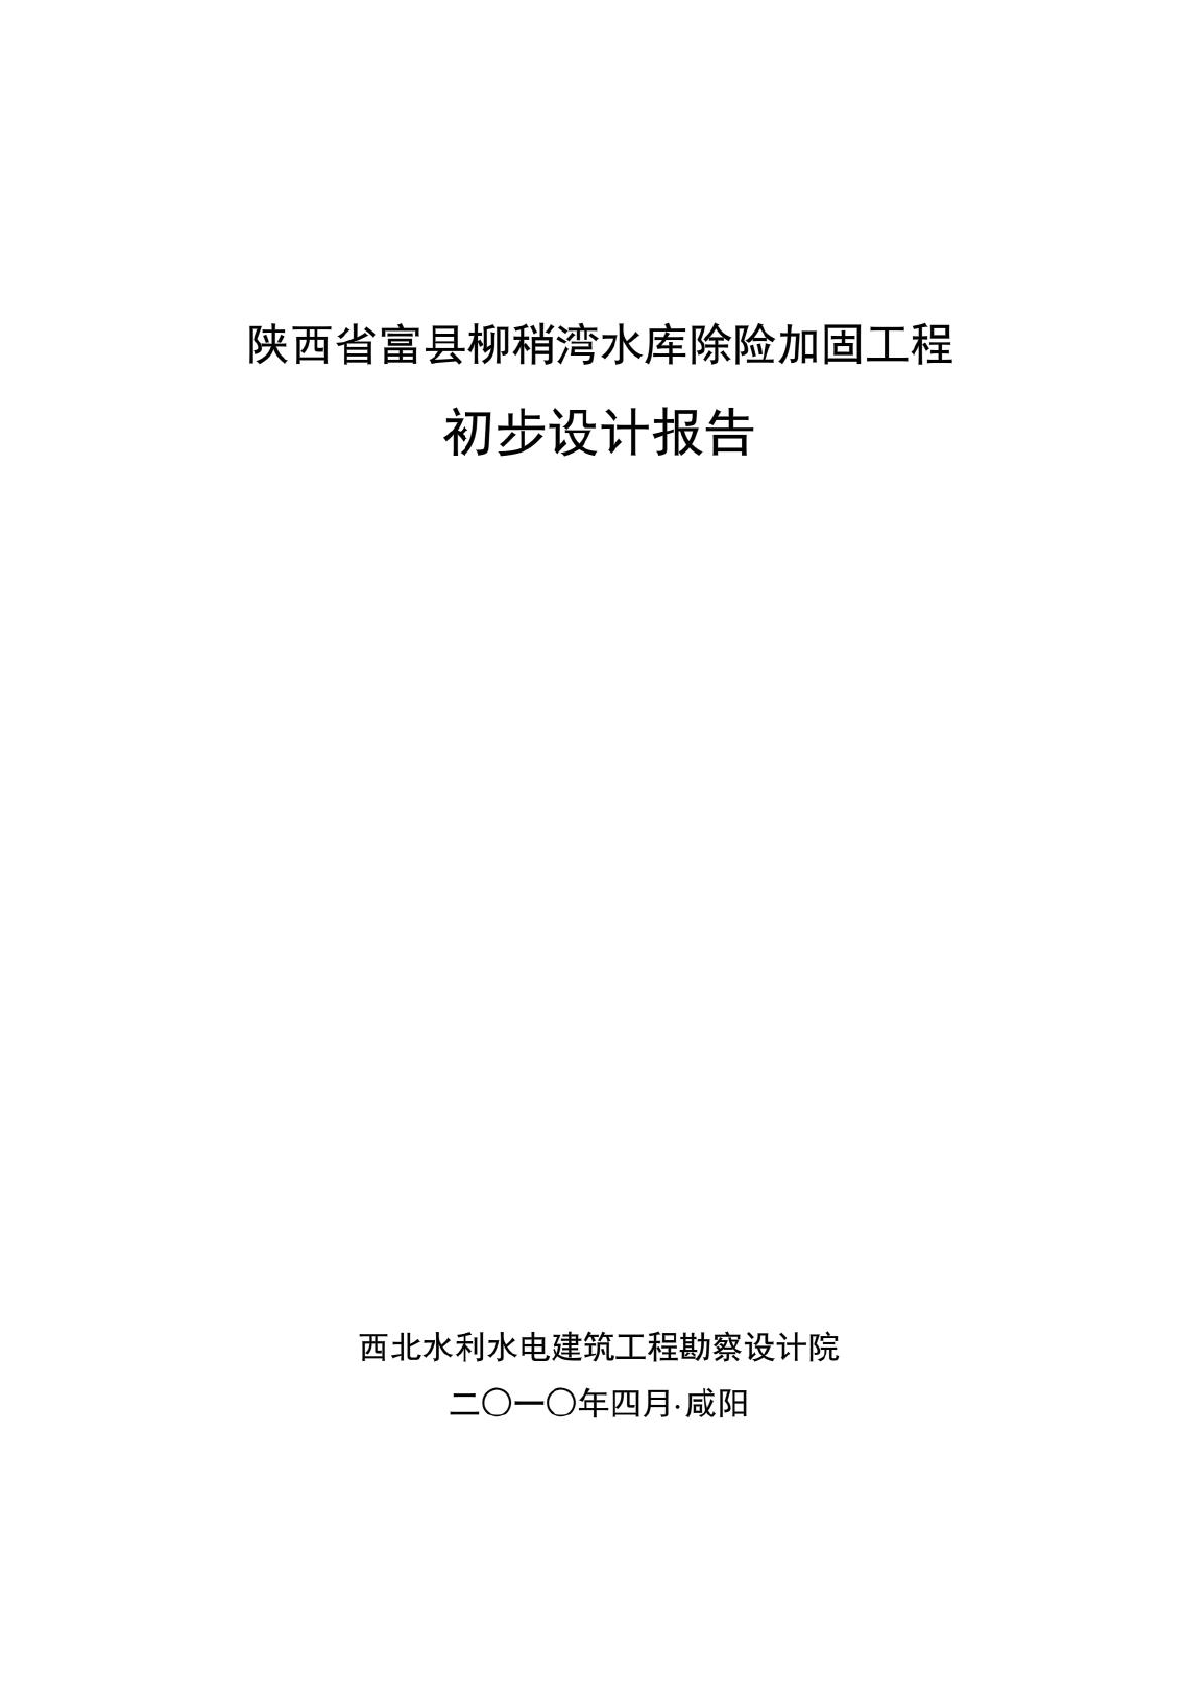 陕西省水库除险加固工程初步设计报告